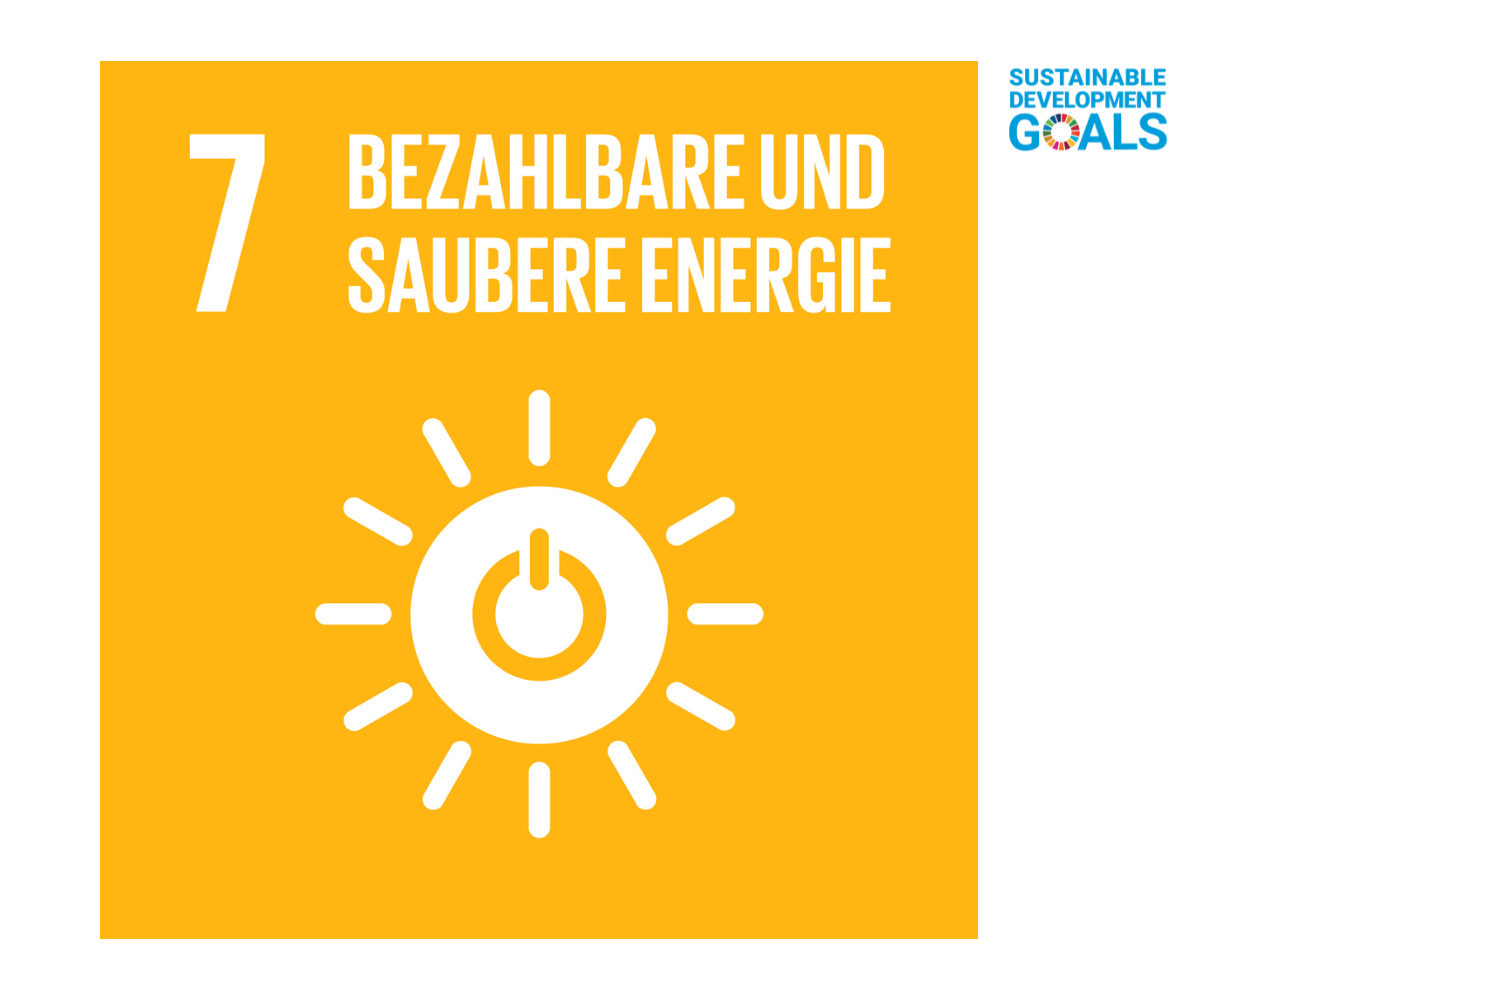 Bezahlbare und saubere Energie - SDG 7